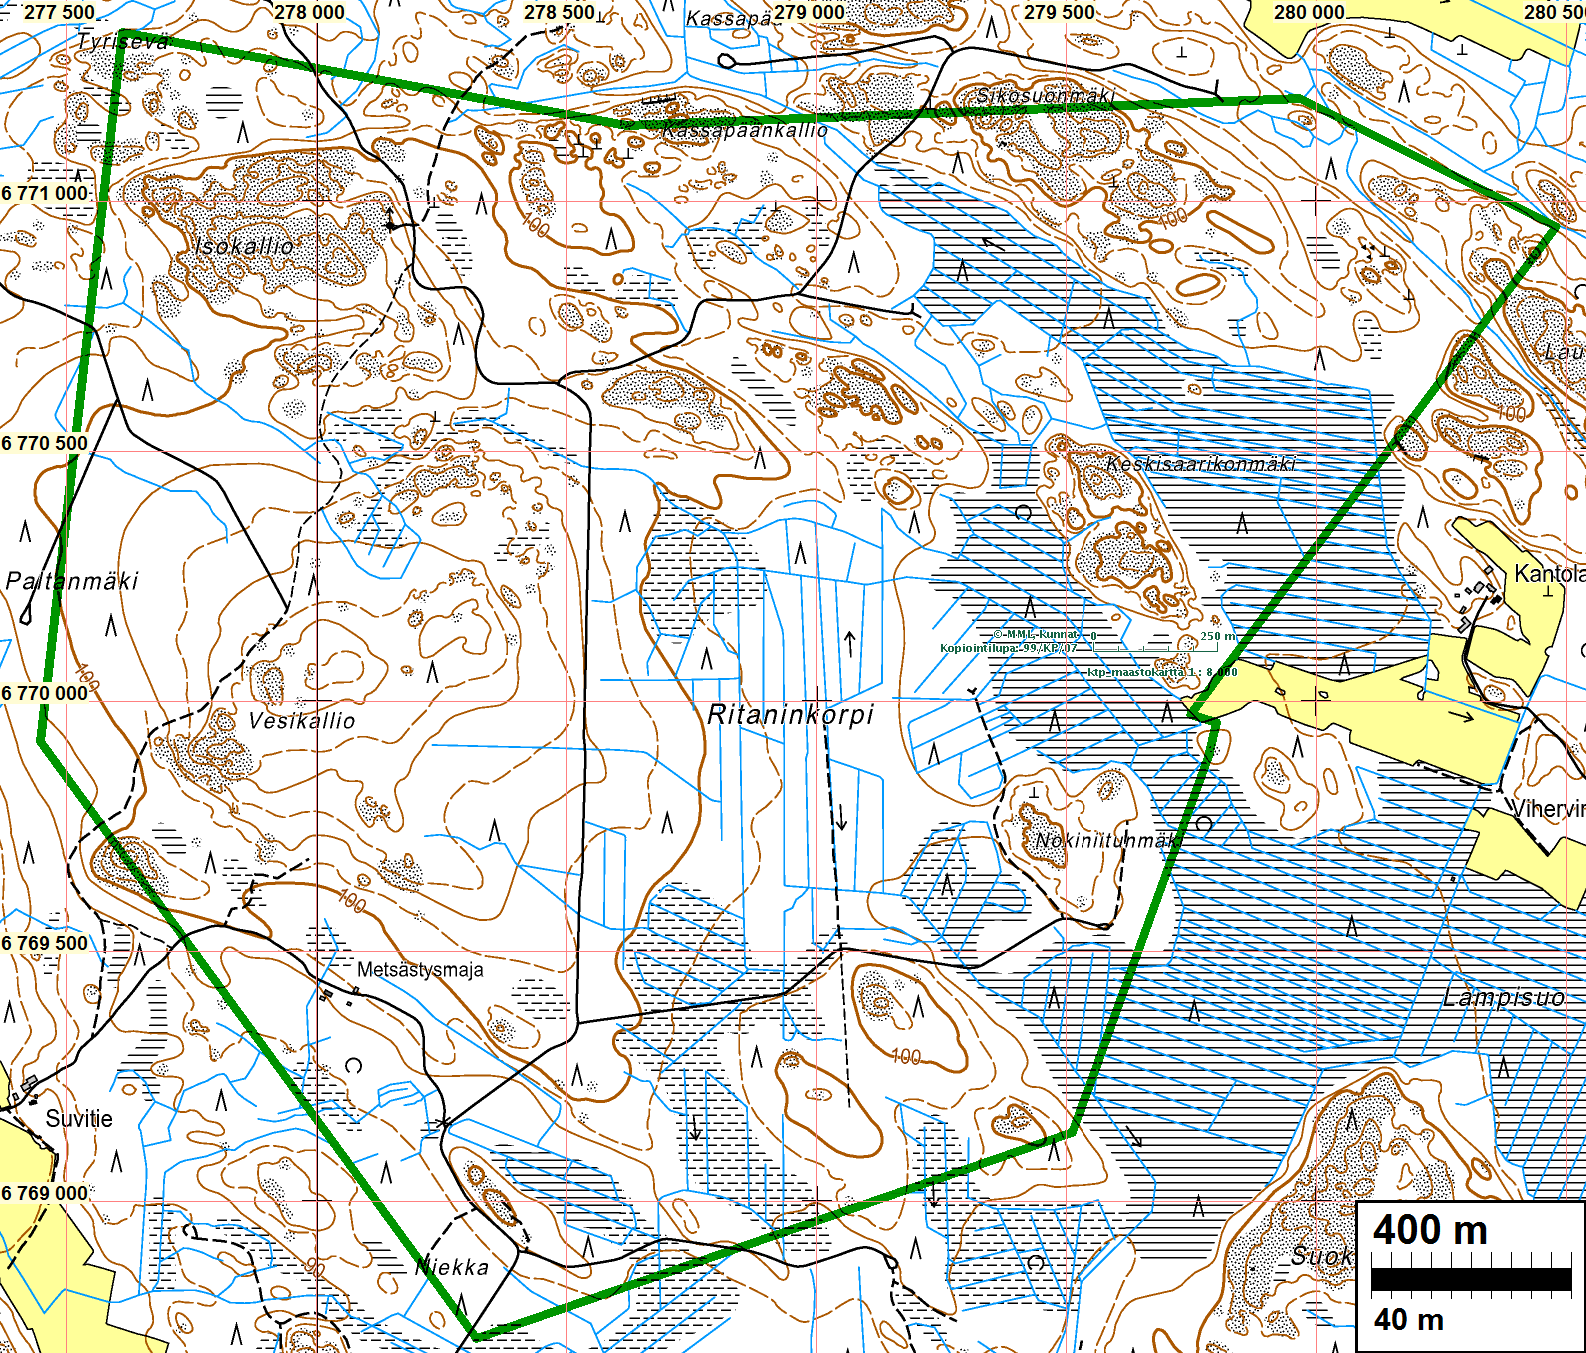 3 Yleiskartta Inventointialueen rajaus on vihreällä. Inventointi Loimaan Alastaroon on vireillä tuulivoimapuistohanke.